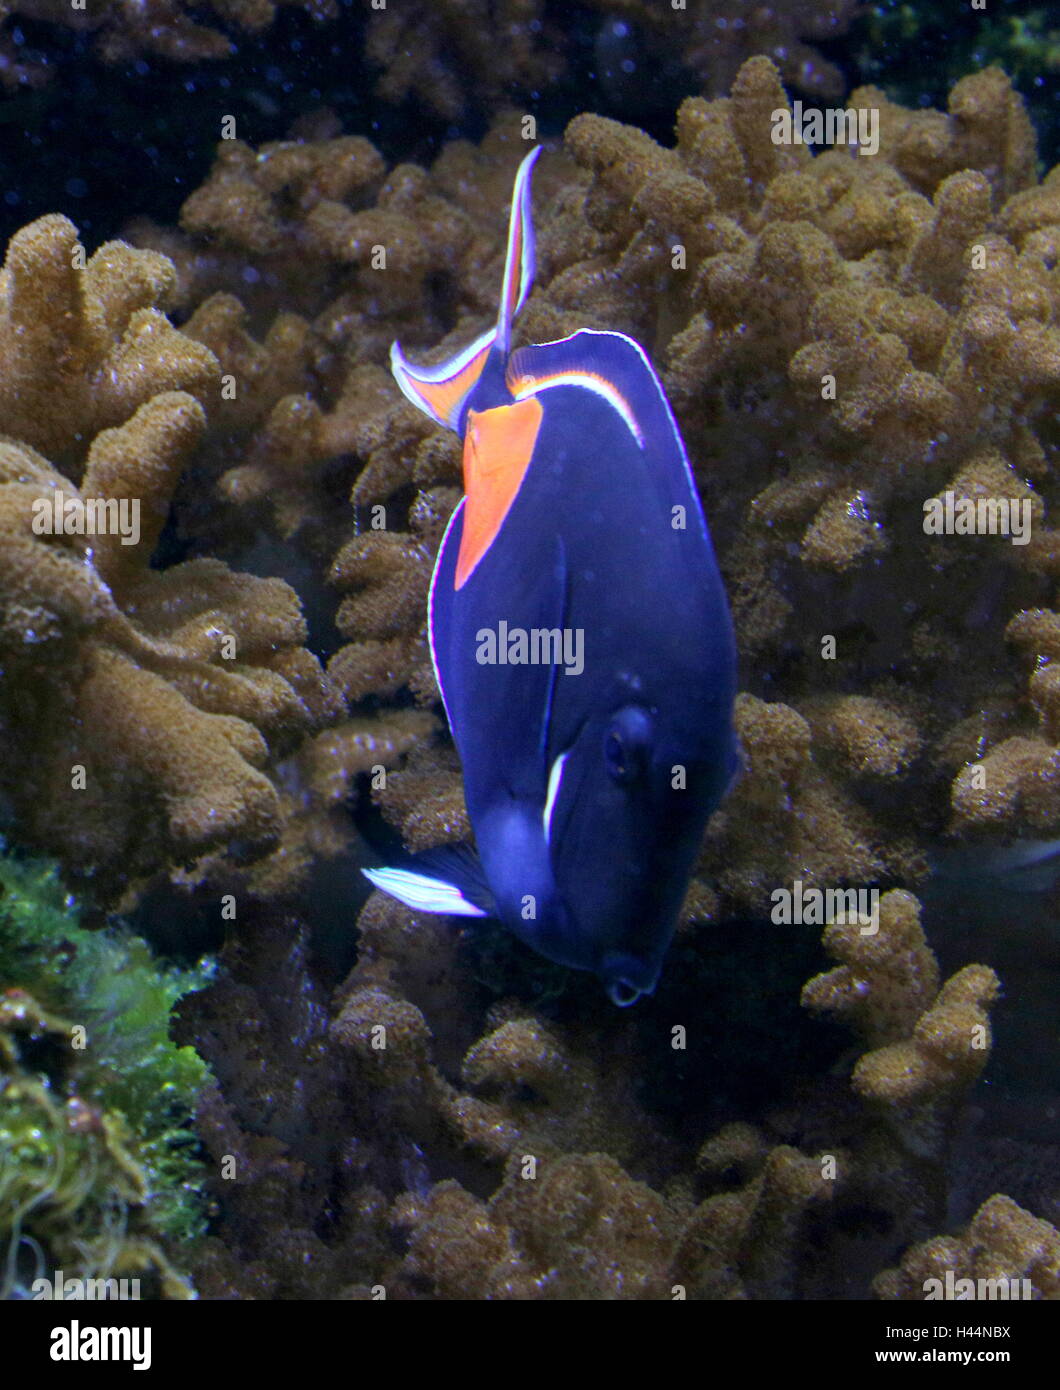 Pacific Achilles tang or  Achilles surgeonfish (Acanthurus achilles) Stock Photo